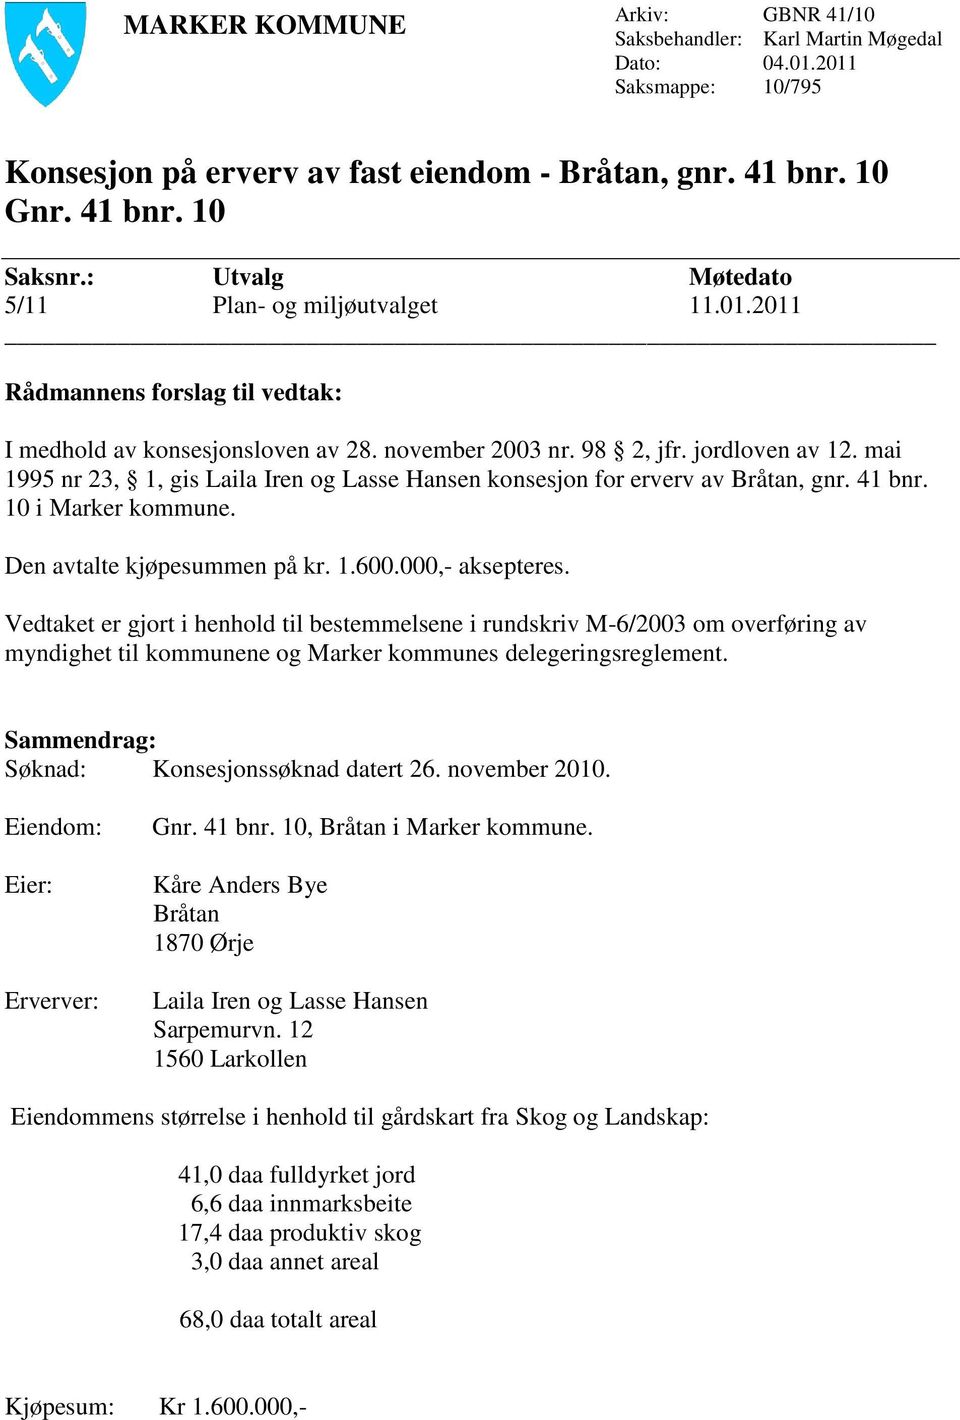 mai 1995 nr 23, 1, gis Laila Iren og Lasse Hansen konsesjon for erverv av Bråtan, gnr. 41 bnr. 10 i Marker kommune. Den avtalte kjøpesummen på kr. 1.600.000,- aksepteres.